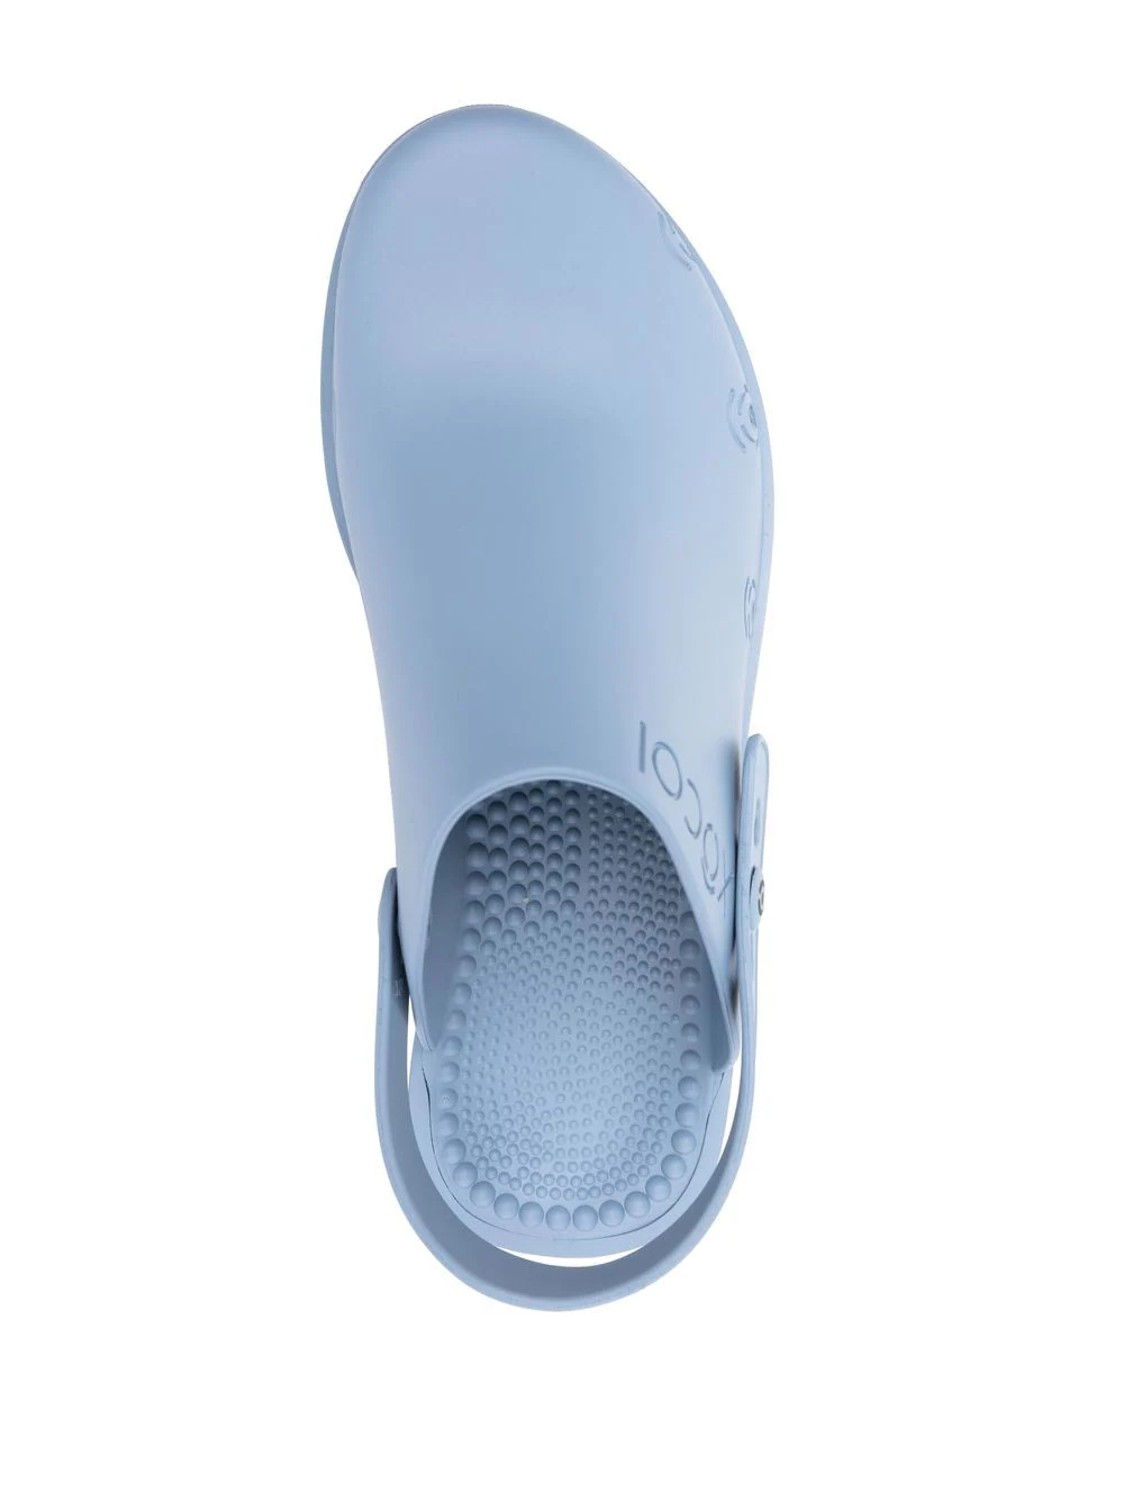 shop Xocoi  Scarpe: Scarpe Xocoi, zoccoli in gomma riciclata, cinturino regolabile con bottone, bocchette di ventilazione laterali, suola interna dentata per una maggiore comodità, in colore blu.


Suola: 6 cm. number 2439